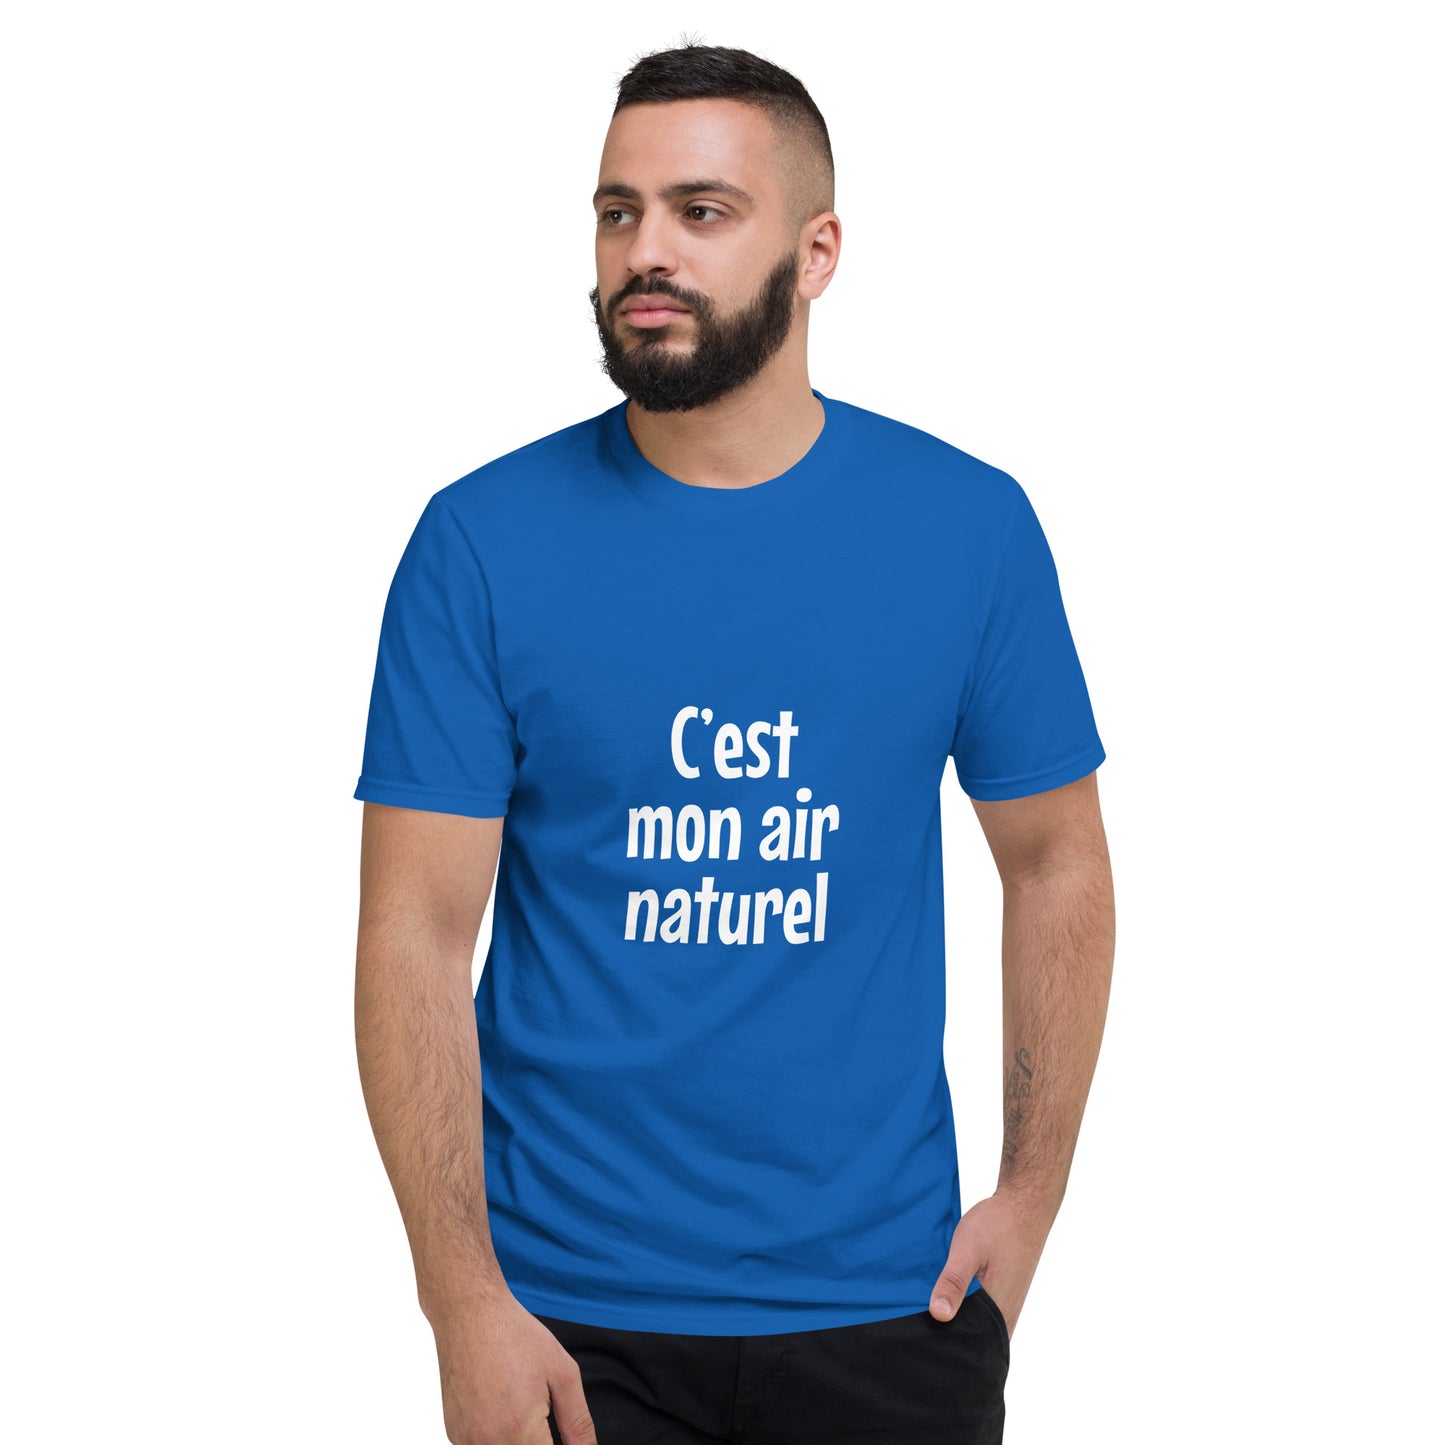 C'est mon air naturel - Men's T-Shirt